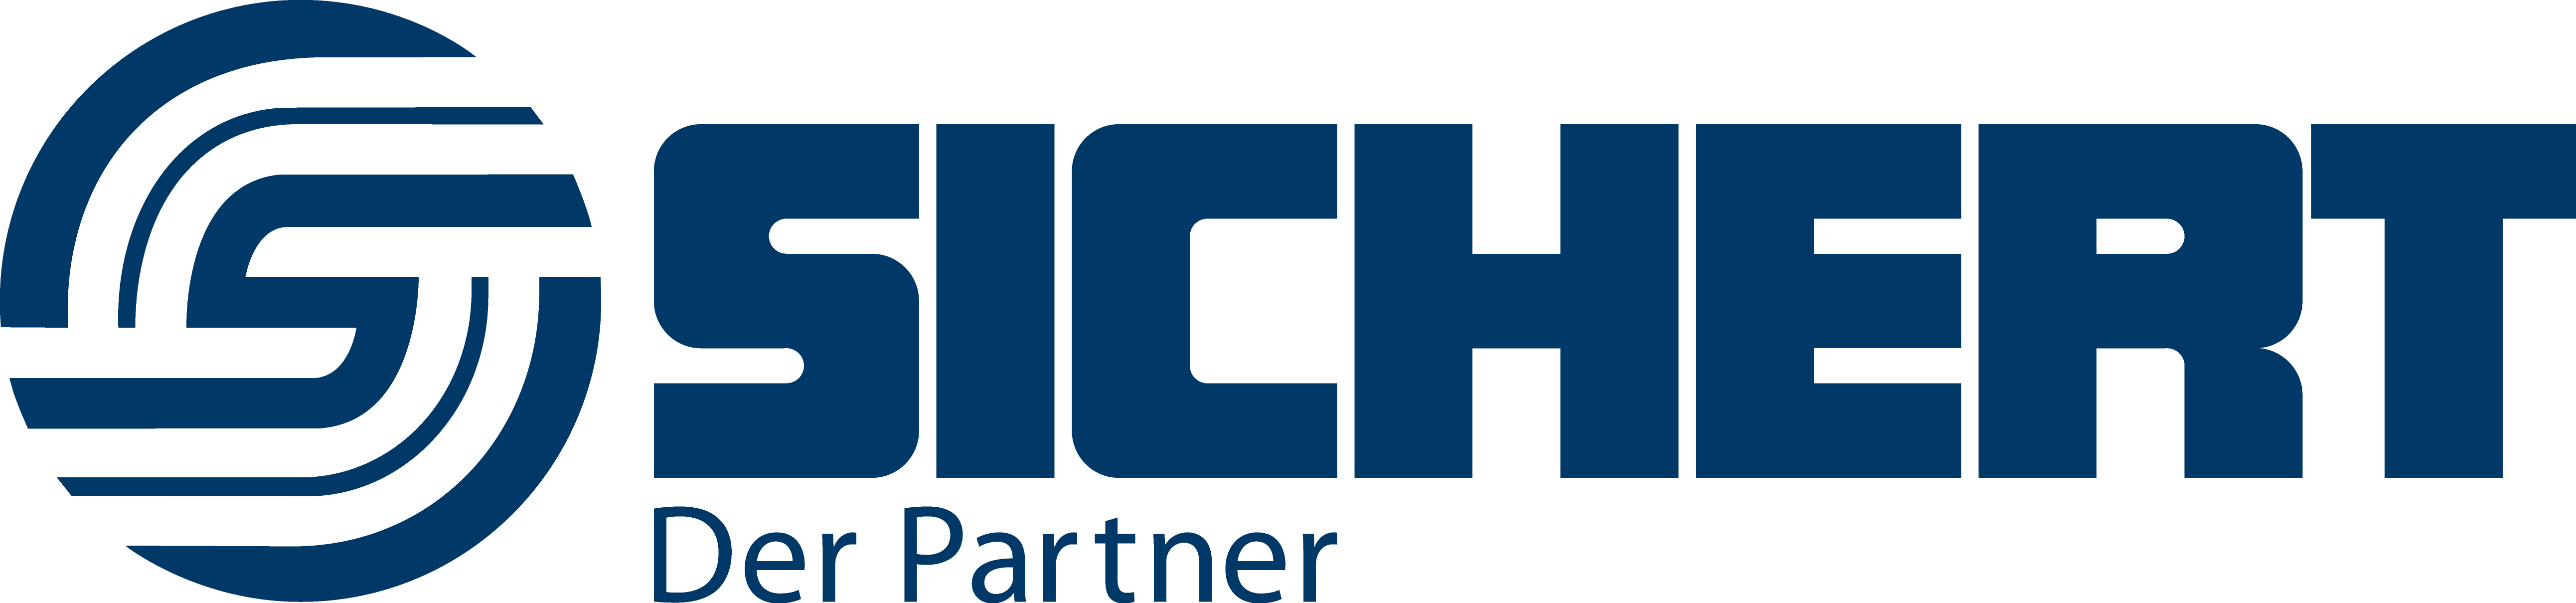 Berthold Sichert GmbH & Co. KG